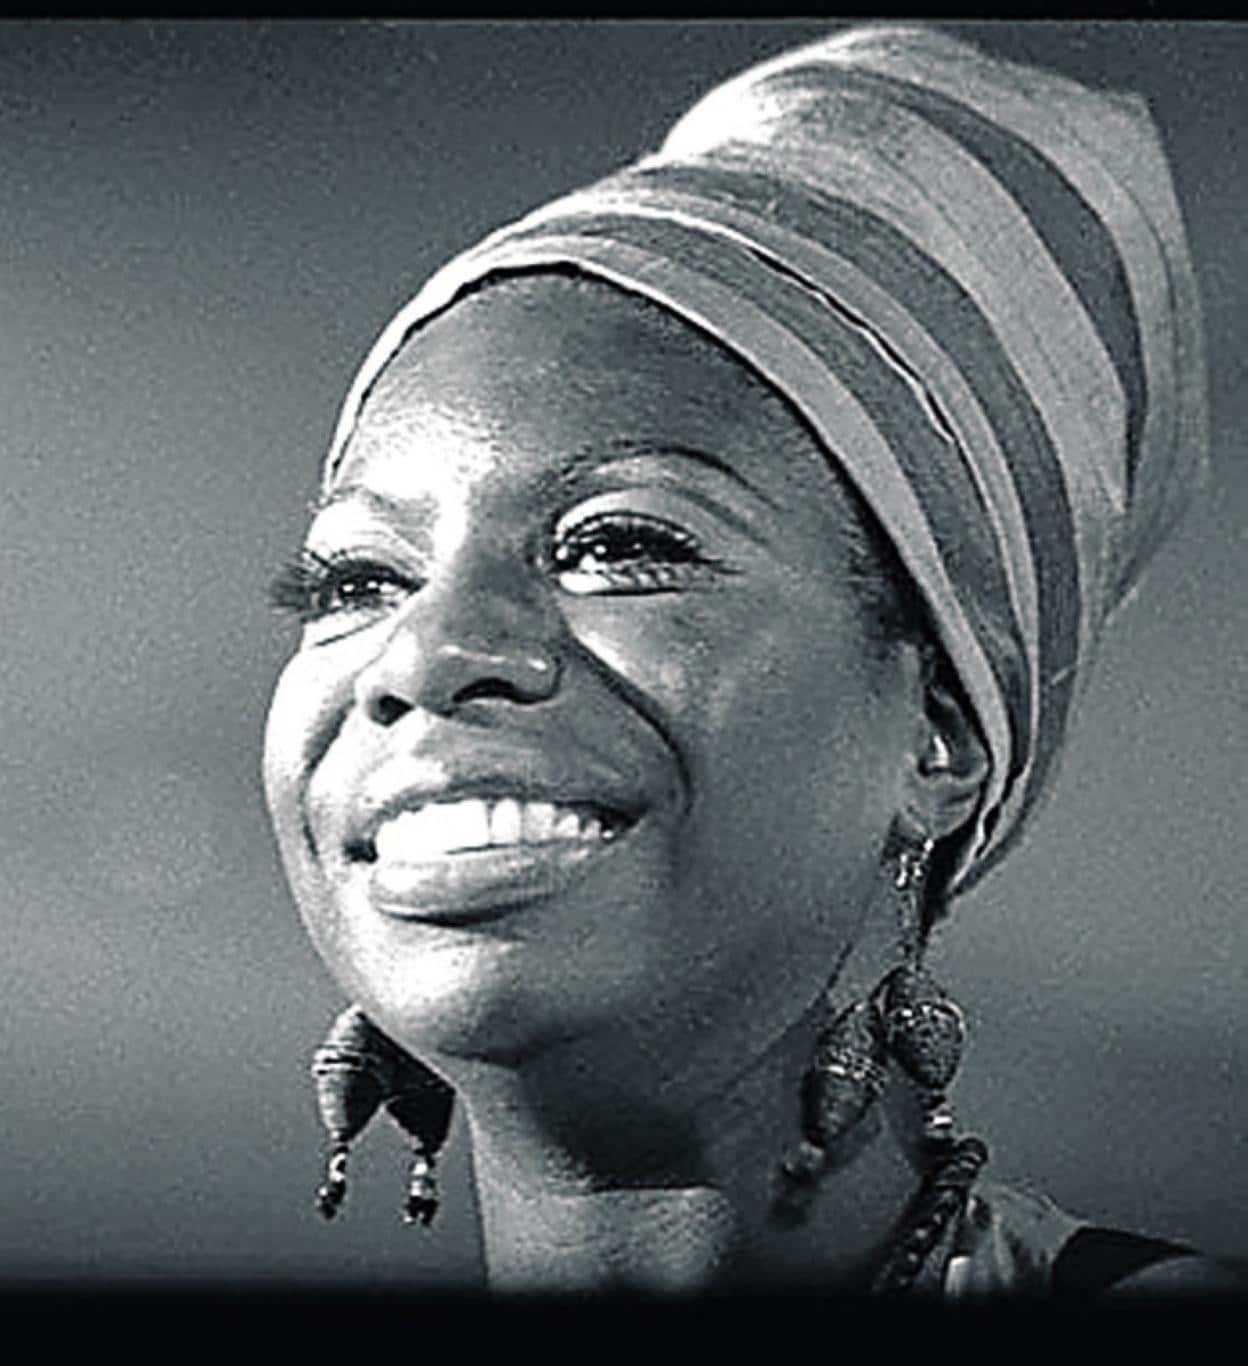 Nina Simone Tribute Show